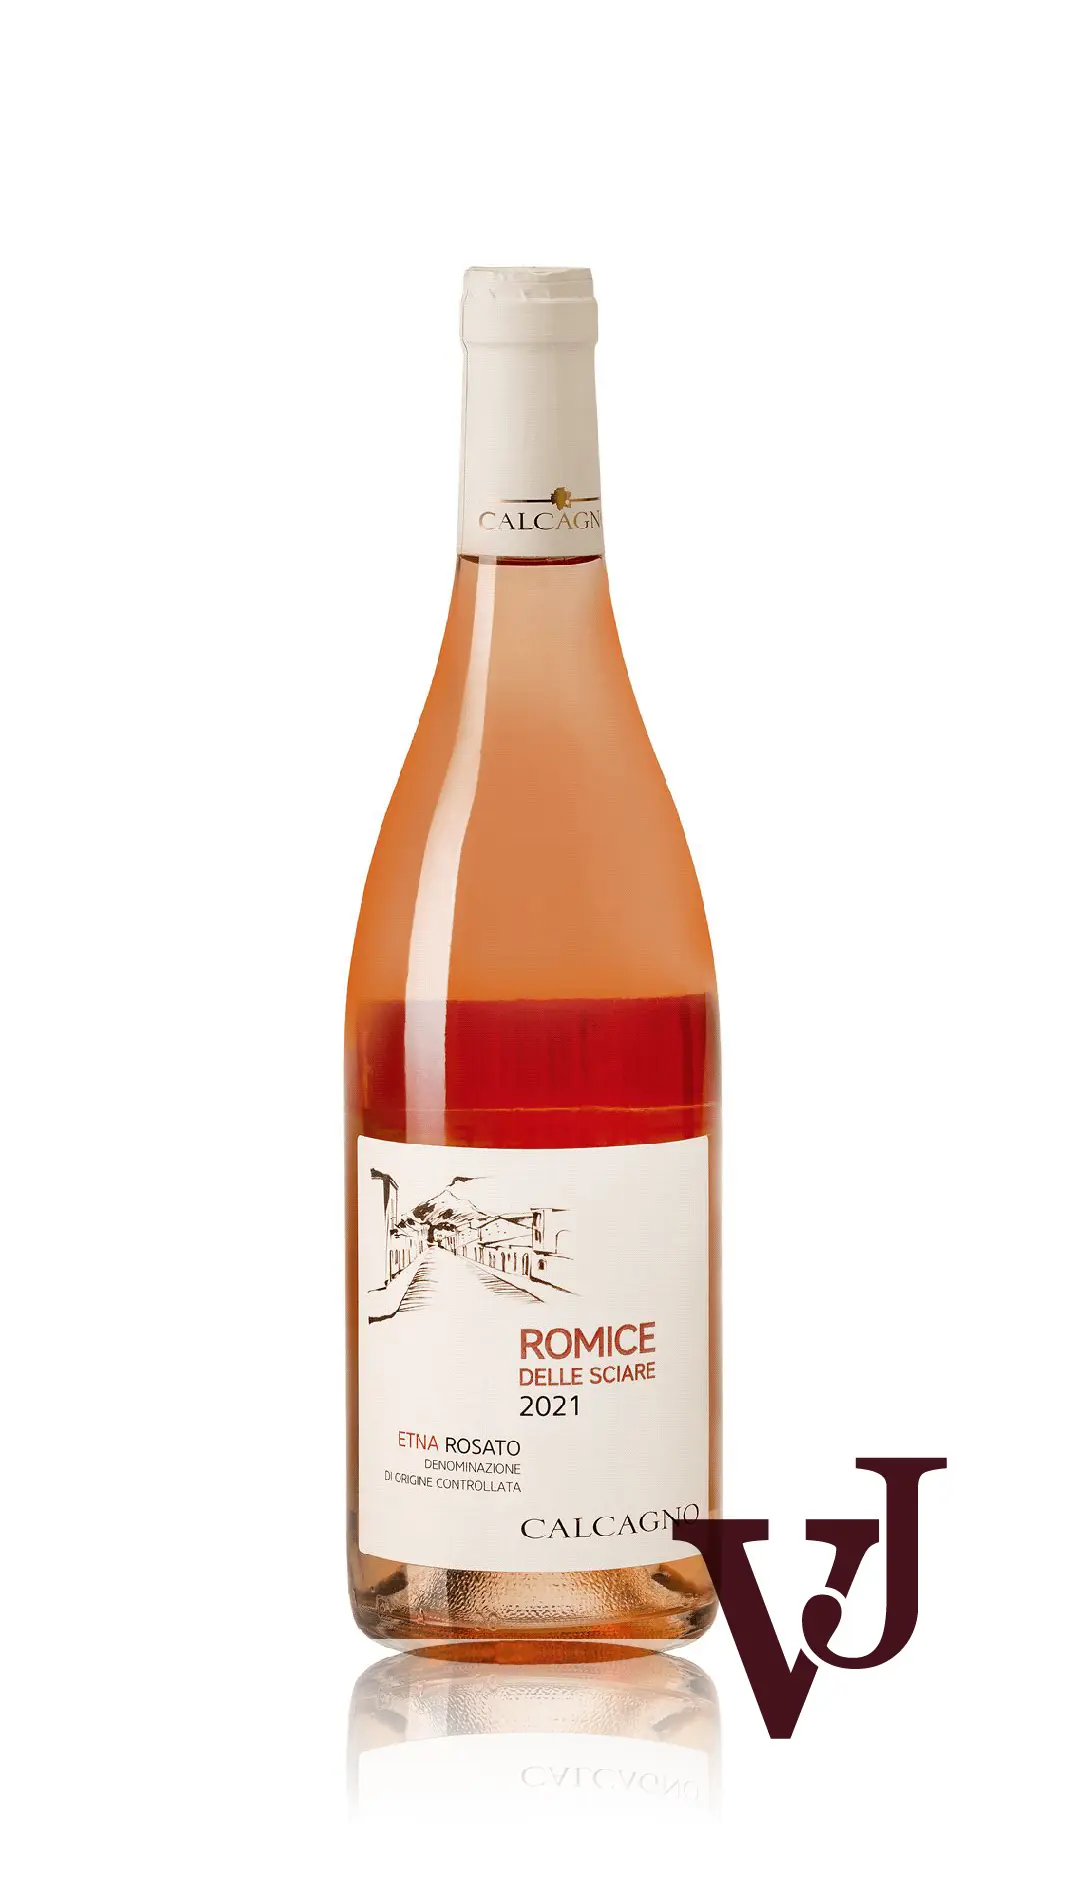 Rosé Vin - Etna Rosato Romice Delle Sciare Calcagno 2021 artikel nummer 5287501 från producenten Calcagno från området - Vinjournalen.se